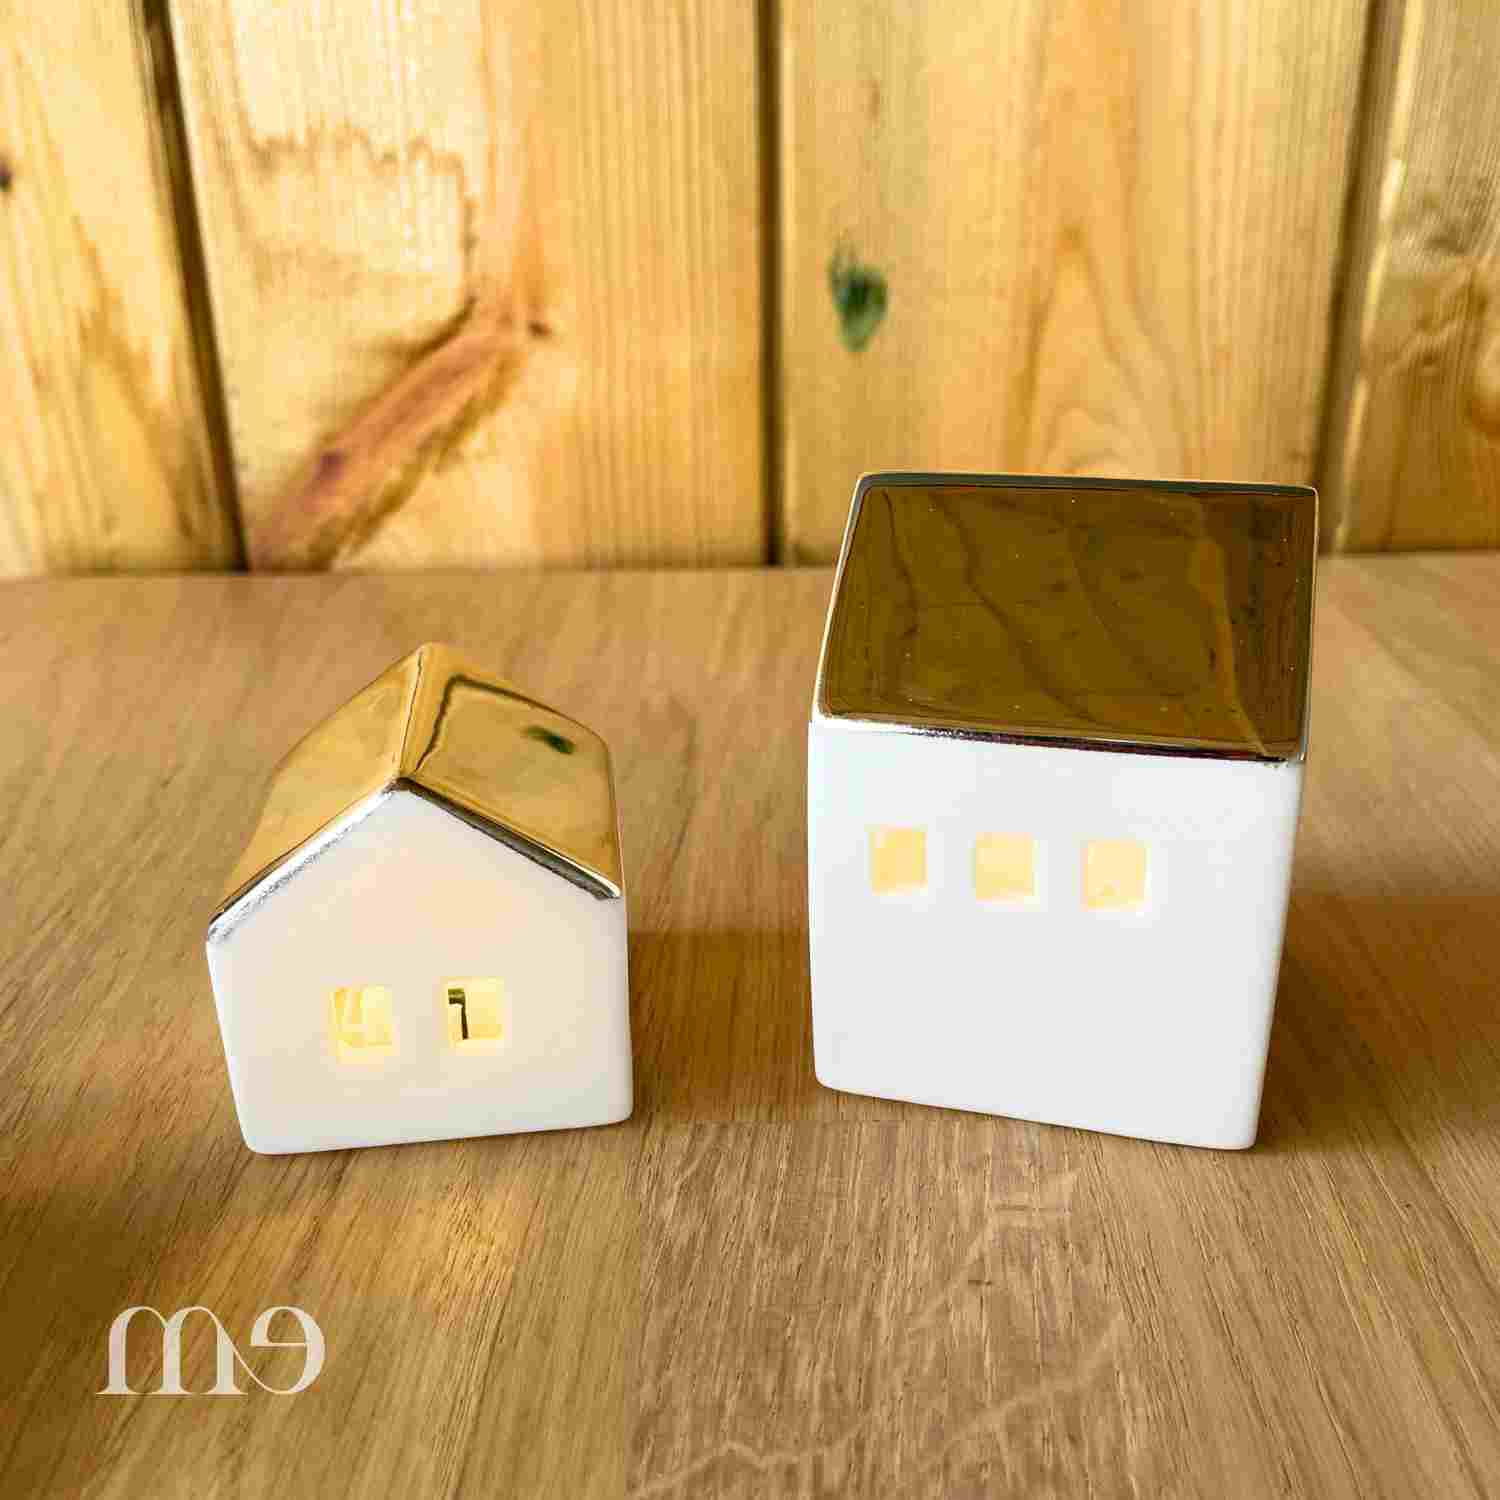 Petite maison lumineuse à LED Rader - Le Joli Shop